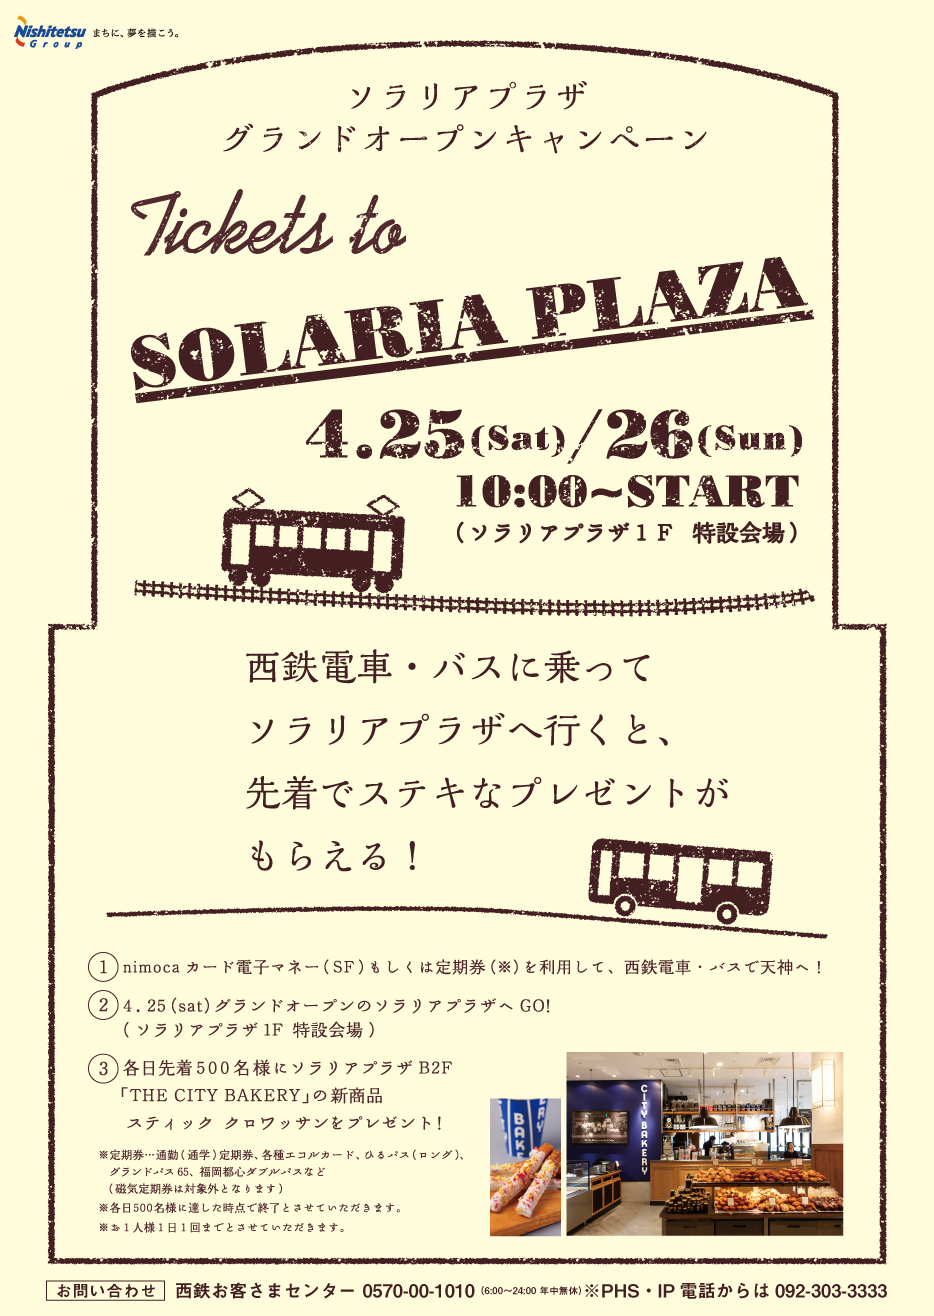 Tickets to SOLARIA PLAZA